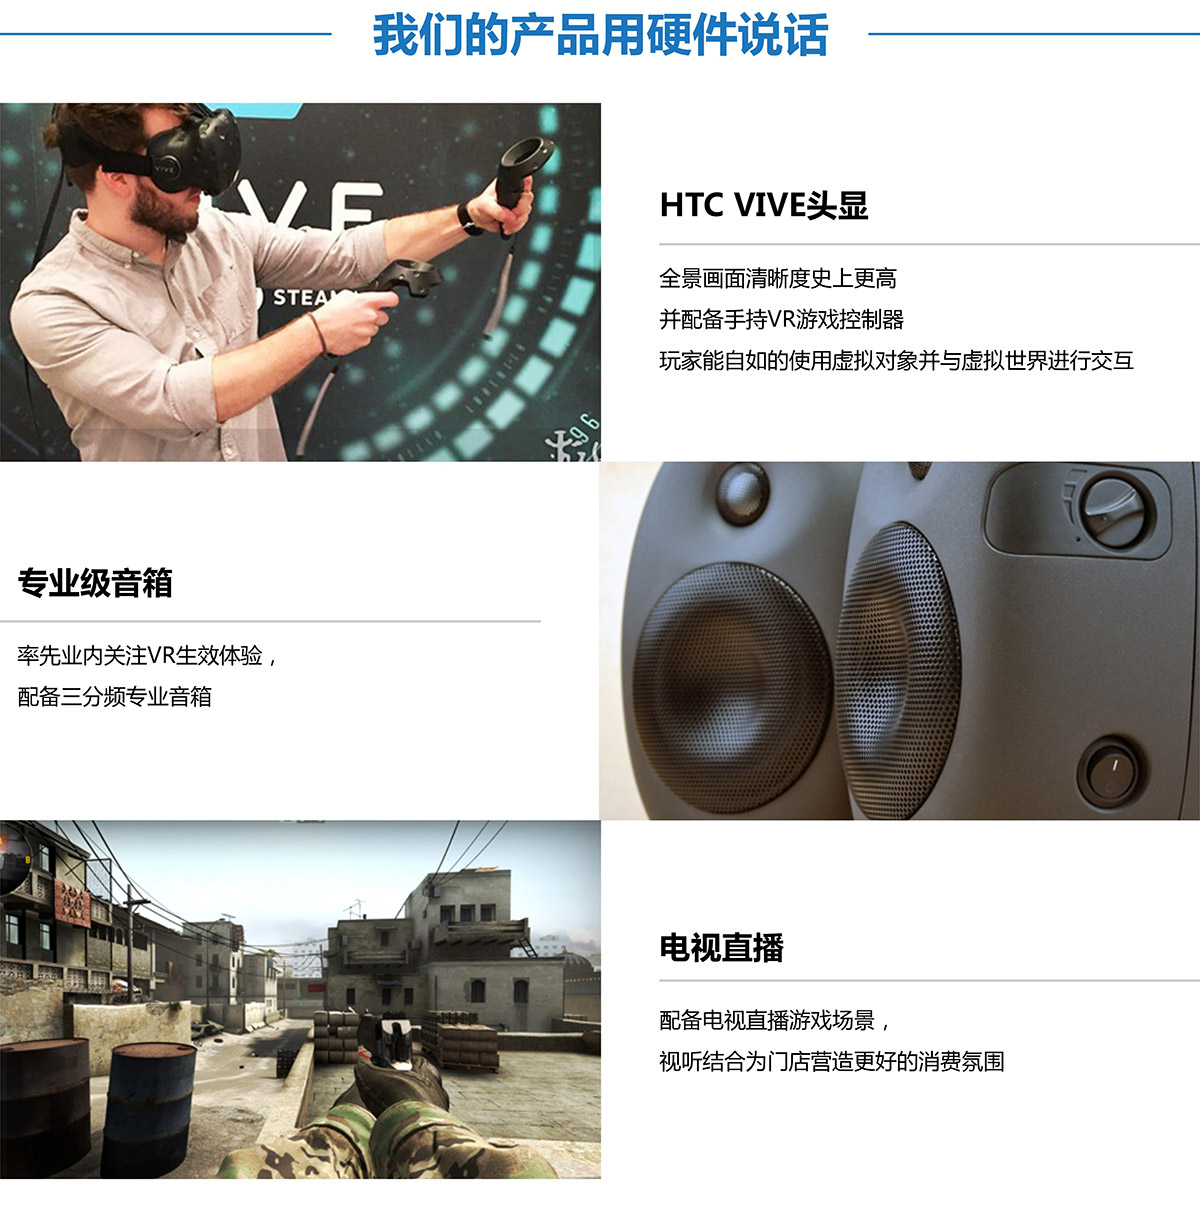 教育体验VR探索用硬件说话.jpg